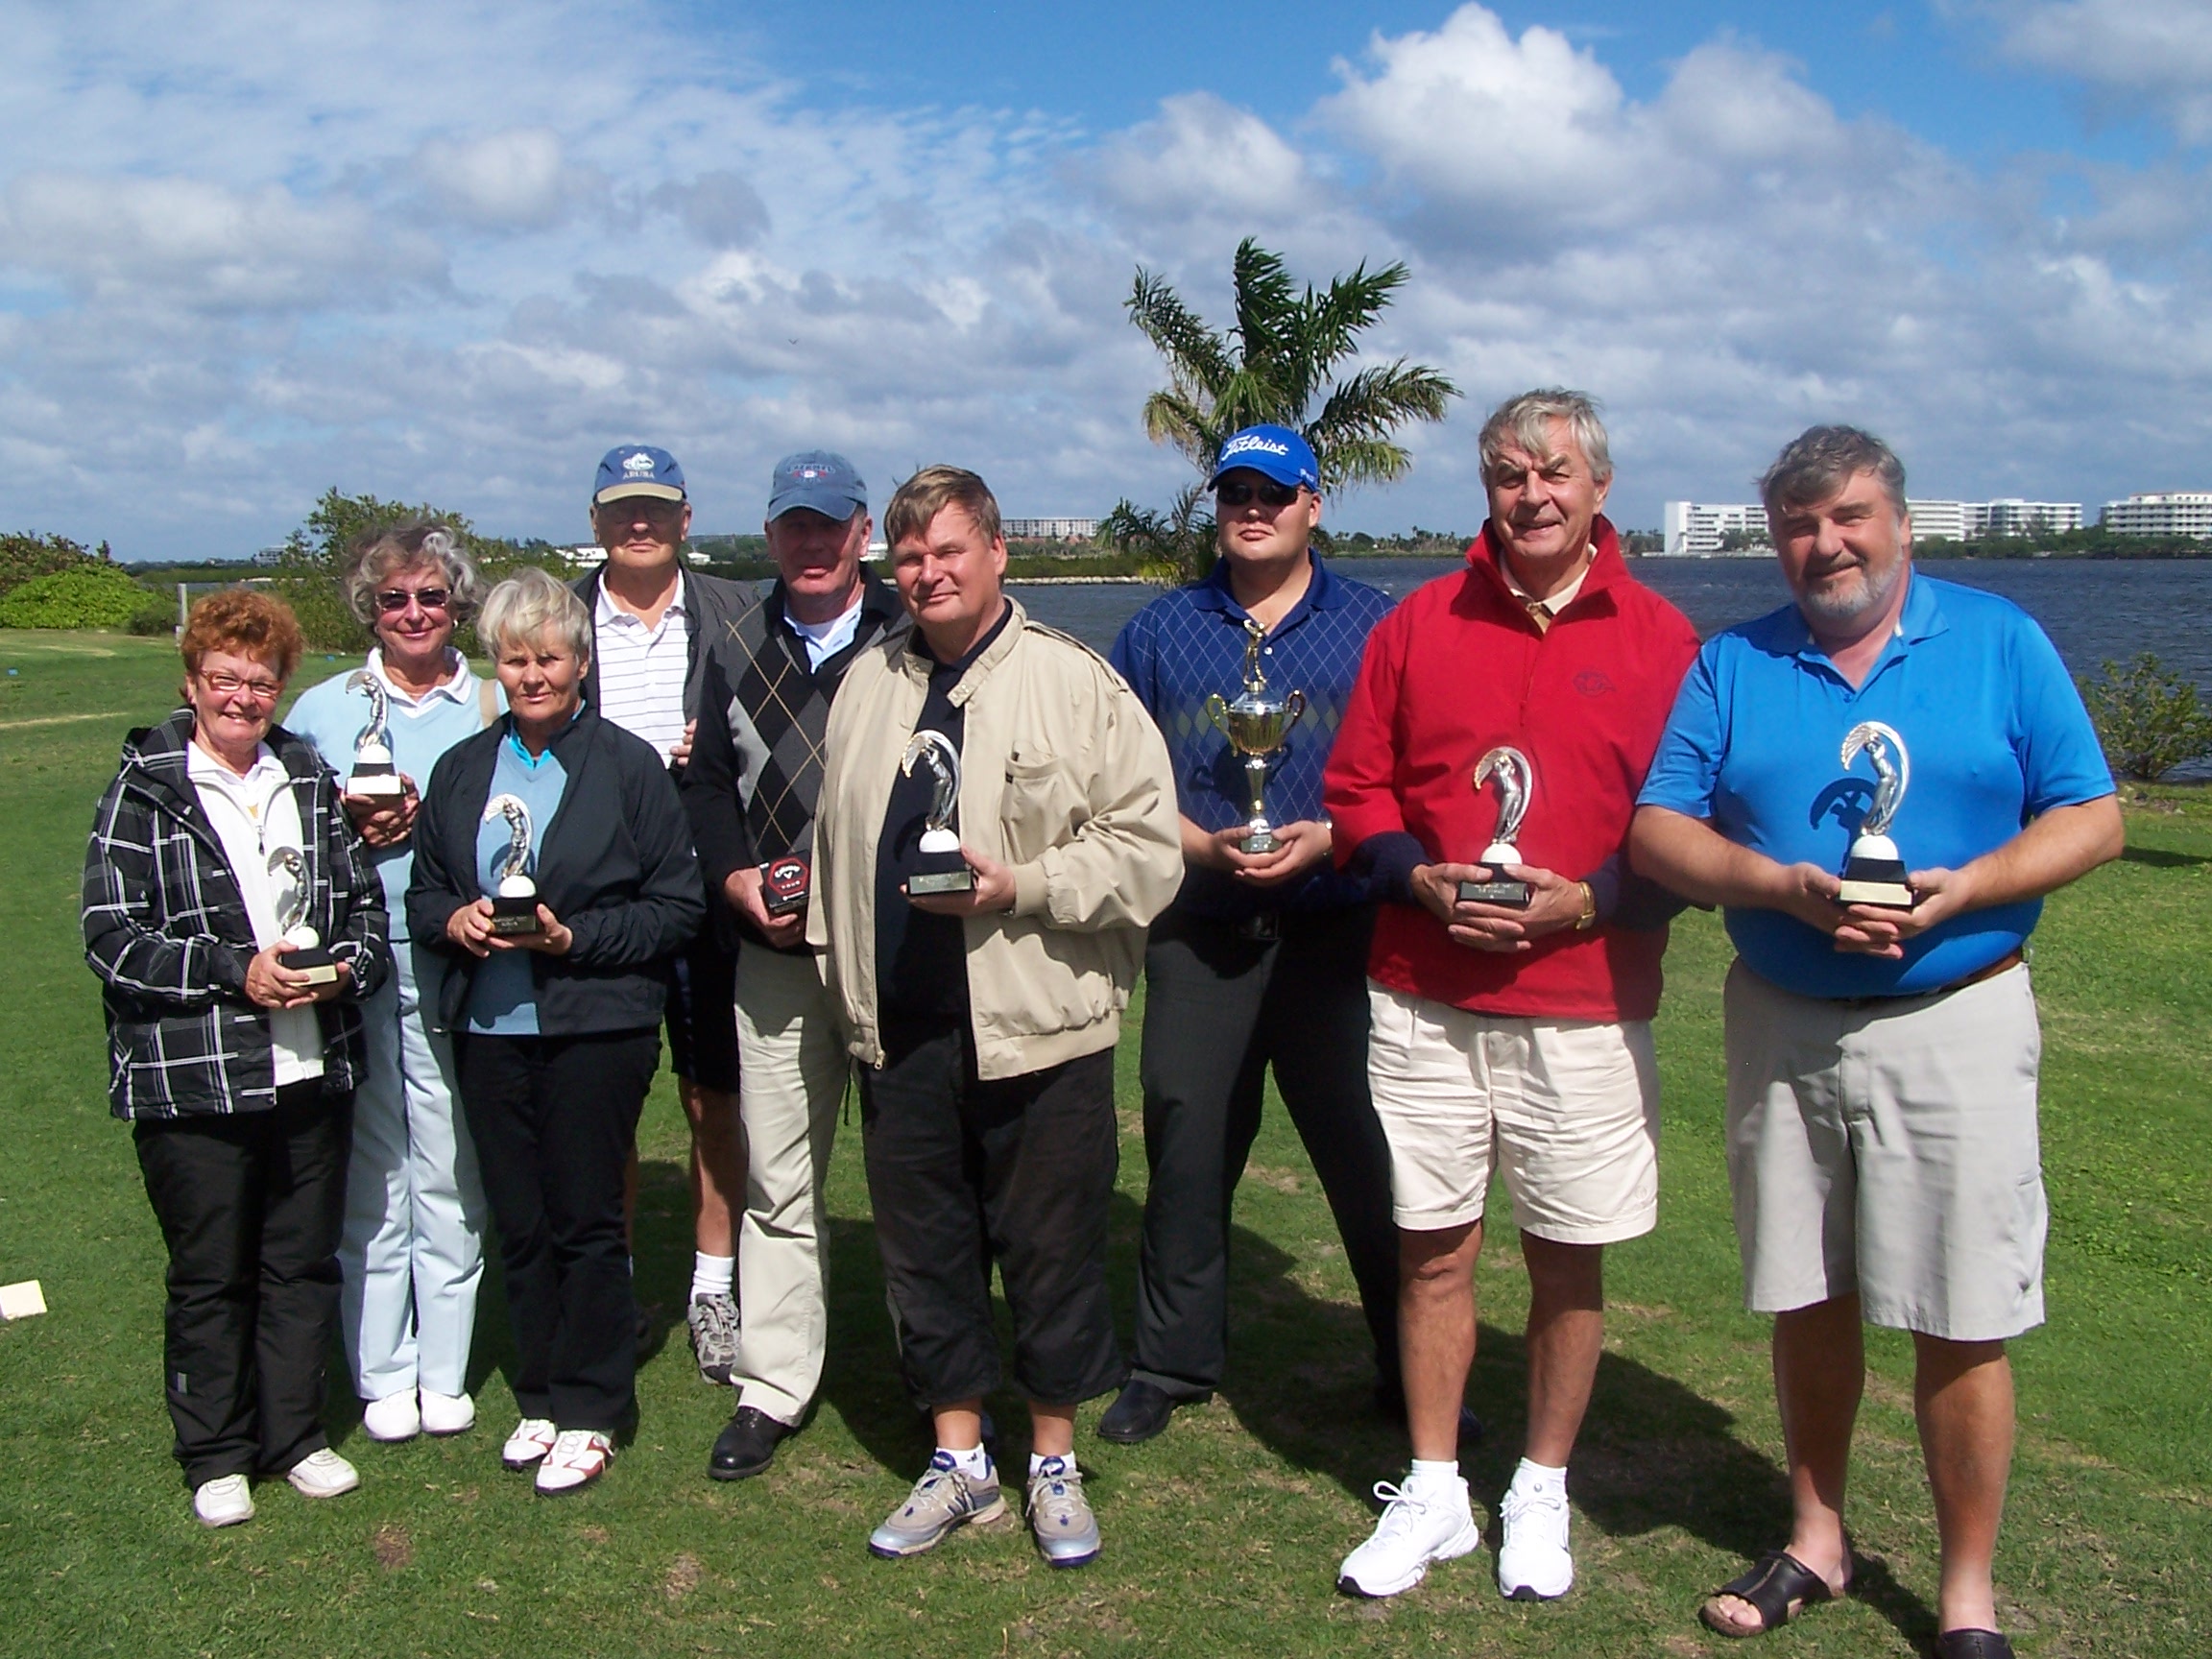 Floridan suomalaisten pitkä golfperinne saa jatkoa sunnuntaina 3. helmikuuta Park Rodgen kentällä. Kuvassa Suomi-golfin 2012 palkinnonsaajat.